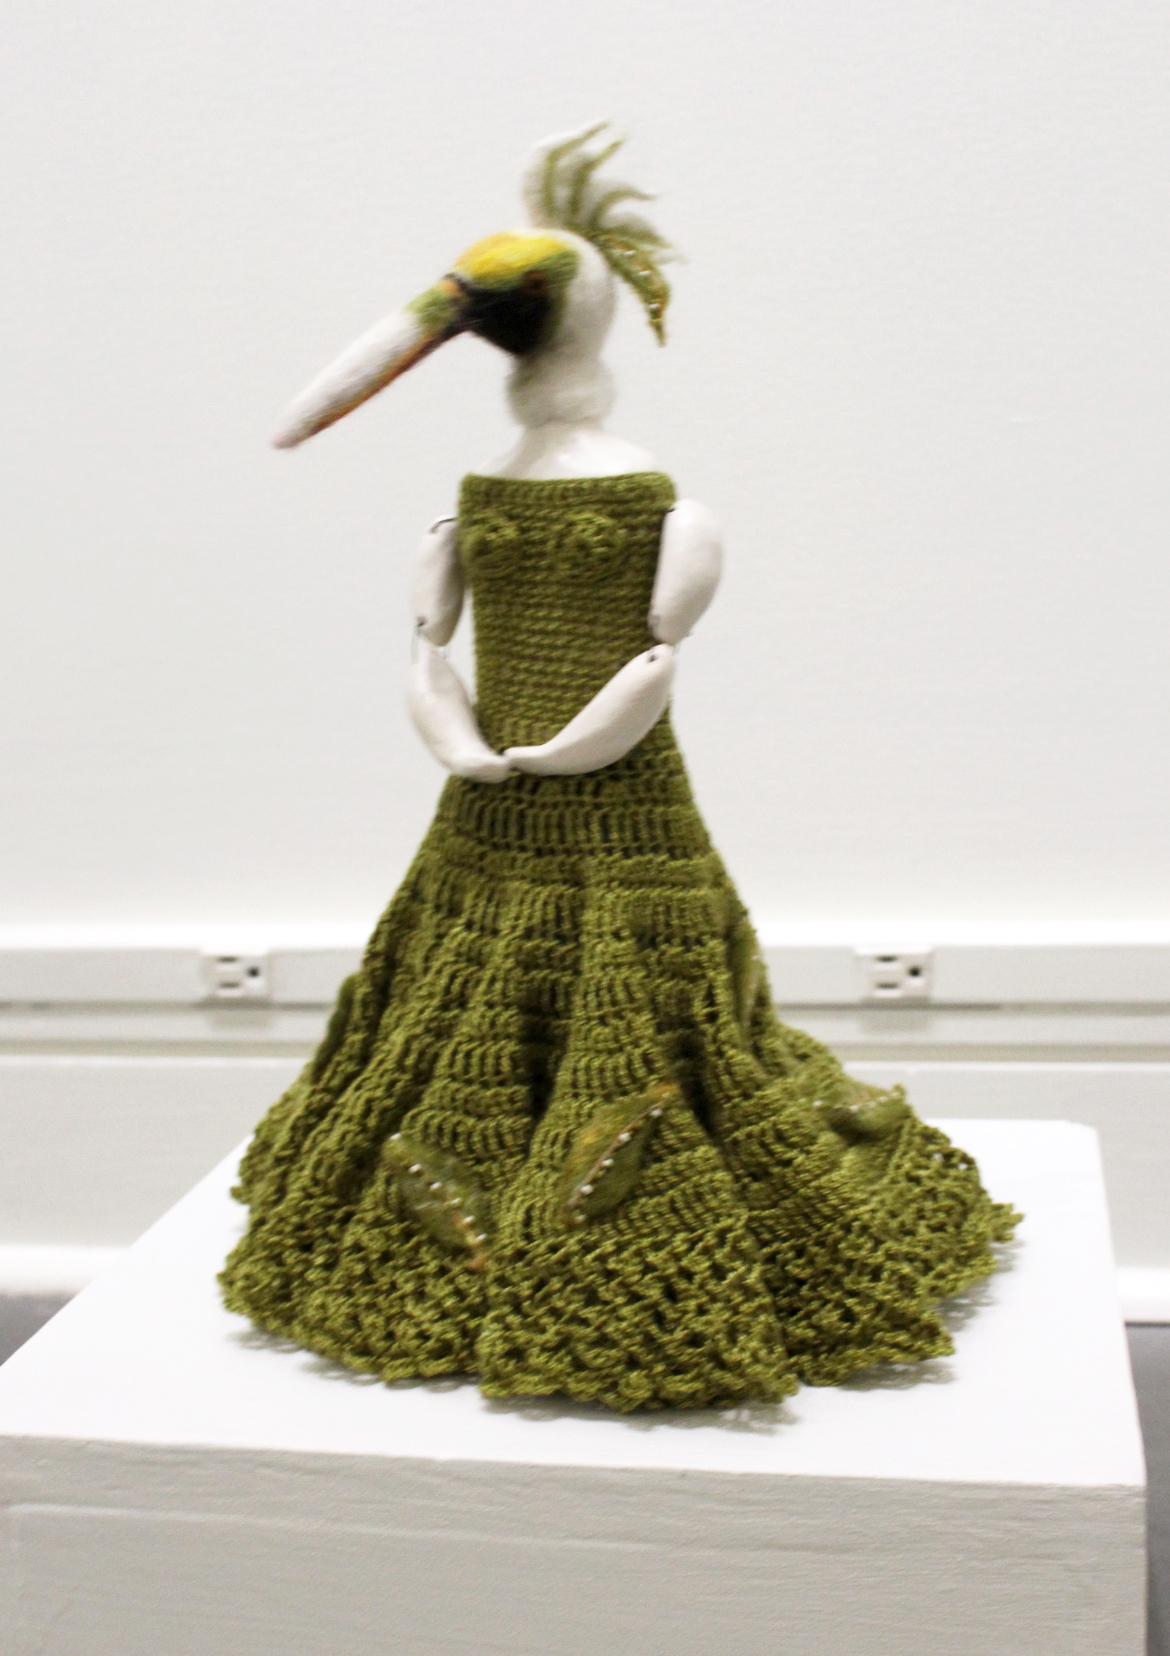 Eva Maier Figurative Sculpture - Standing Bird in Green Dress